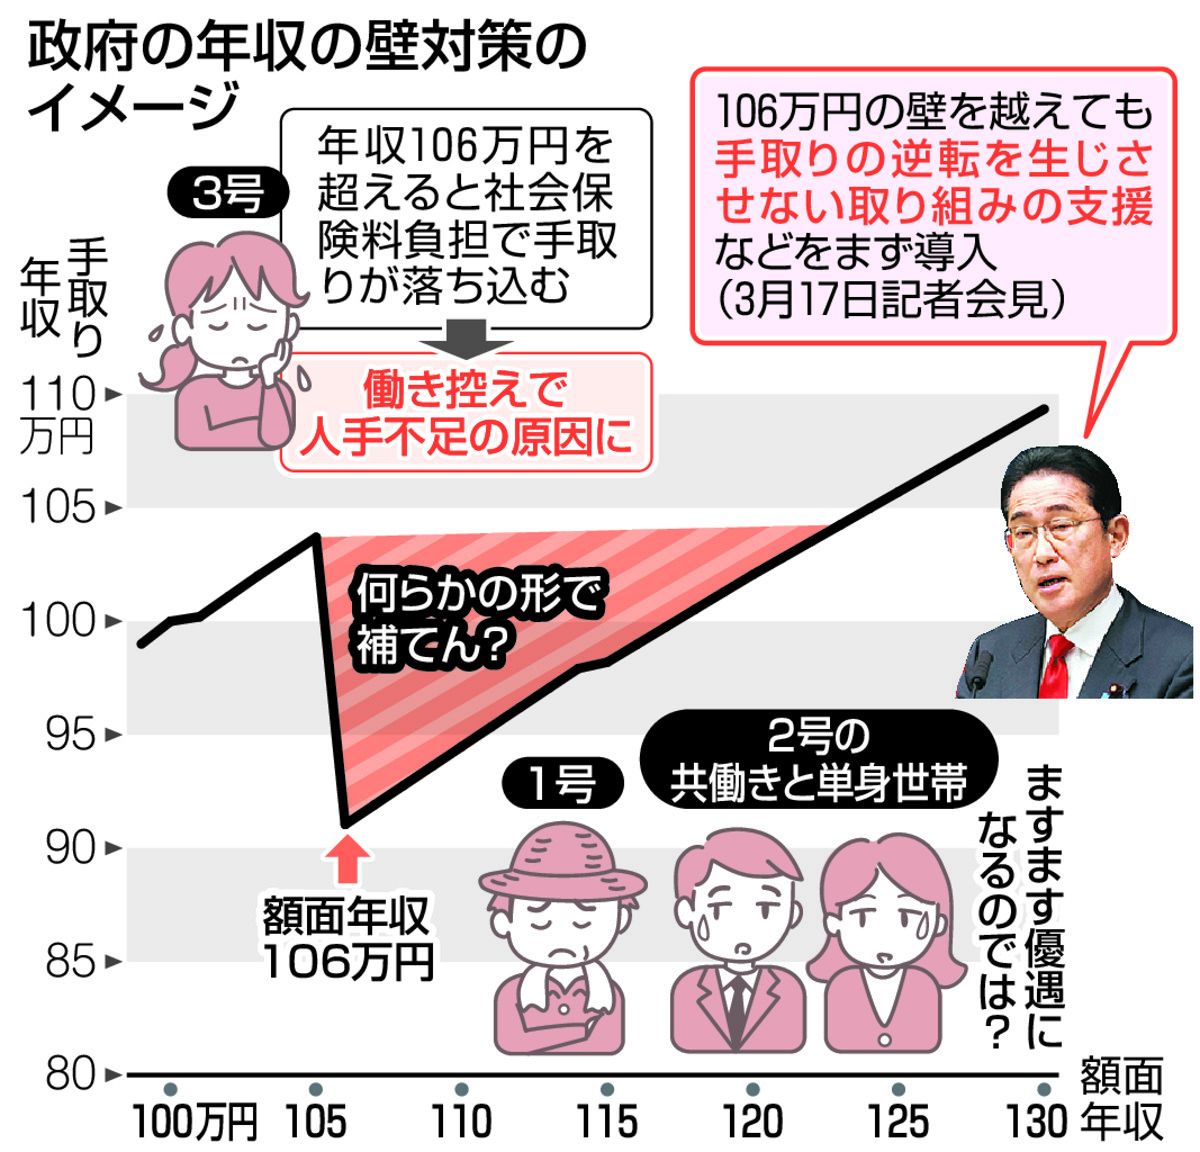 年収の壁」議論、今より不公平感が強まる政府案に批判の声 制度の見直しも容易ではなく：東京新聞 TOKYO Web